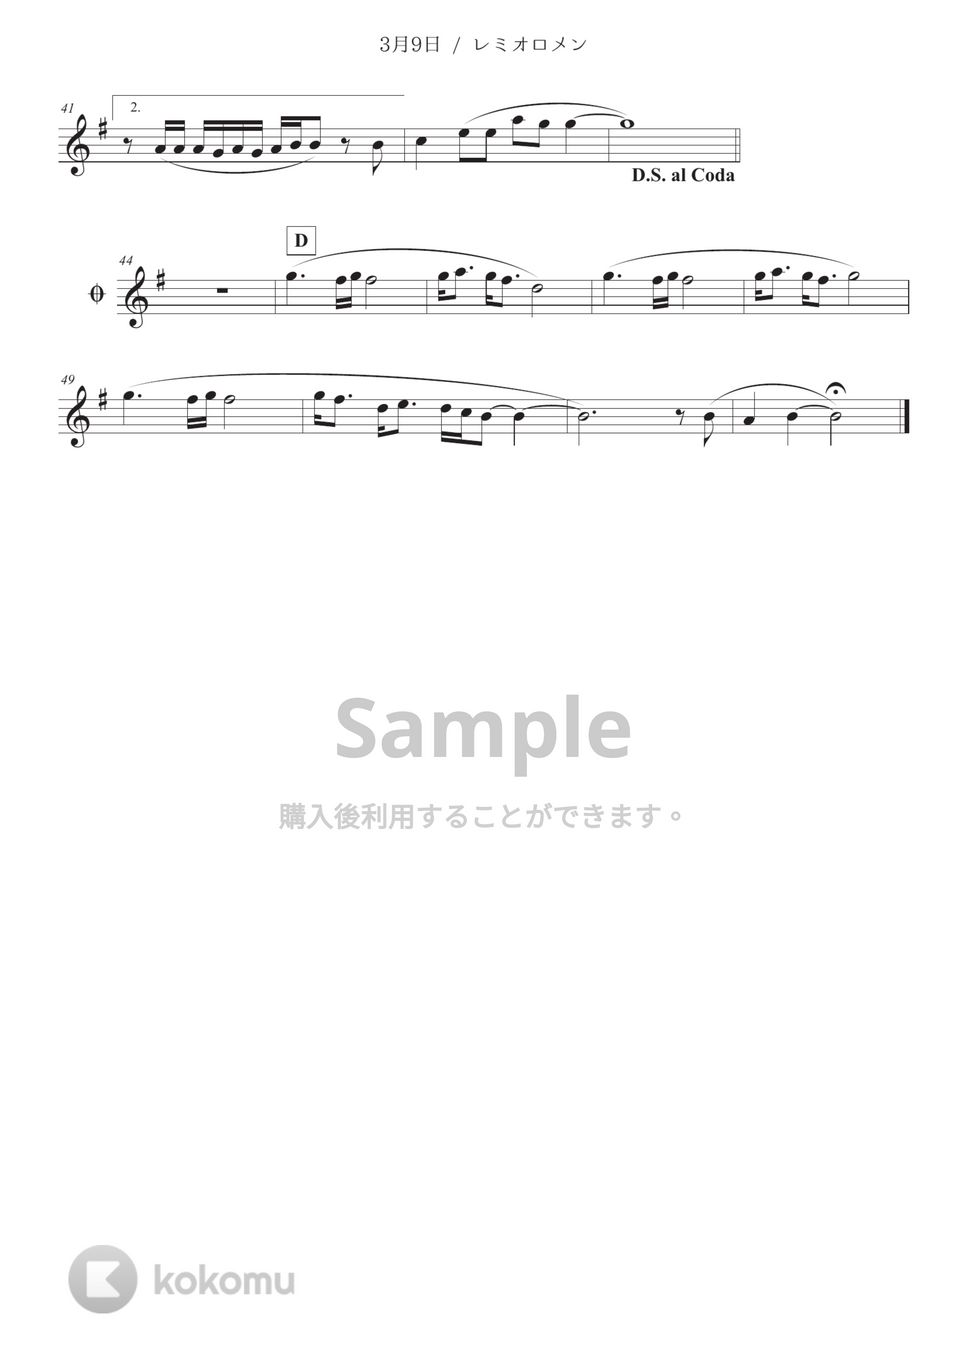 レミオロメン - ３月９日 (in Bb) by Sumika